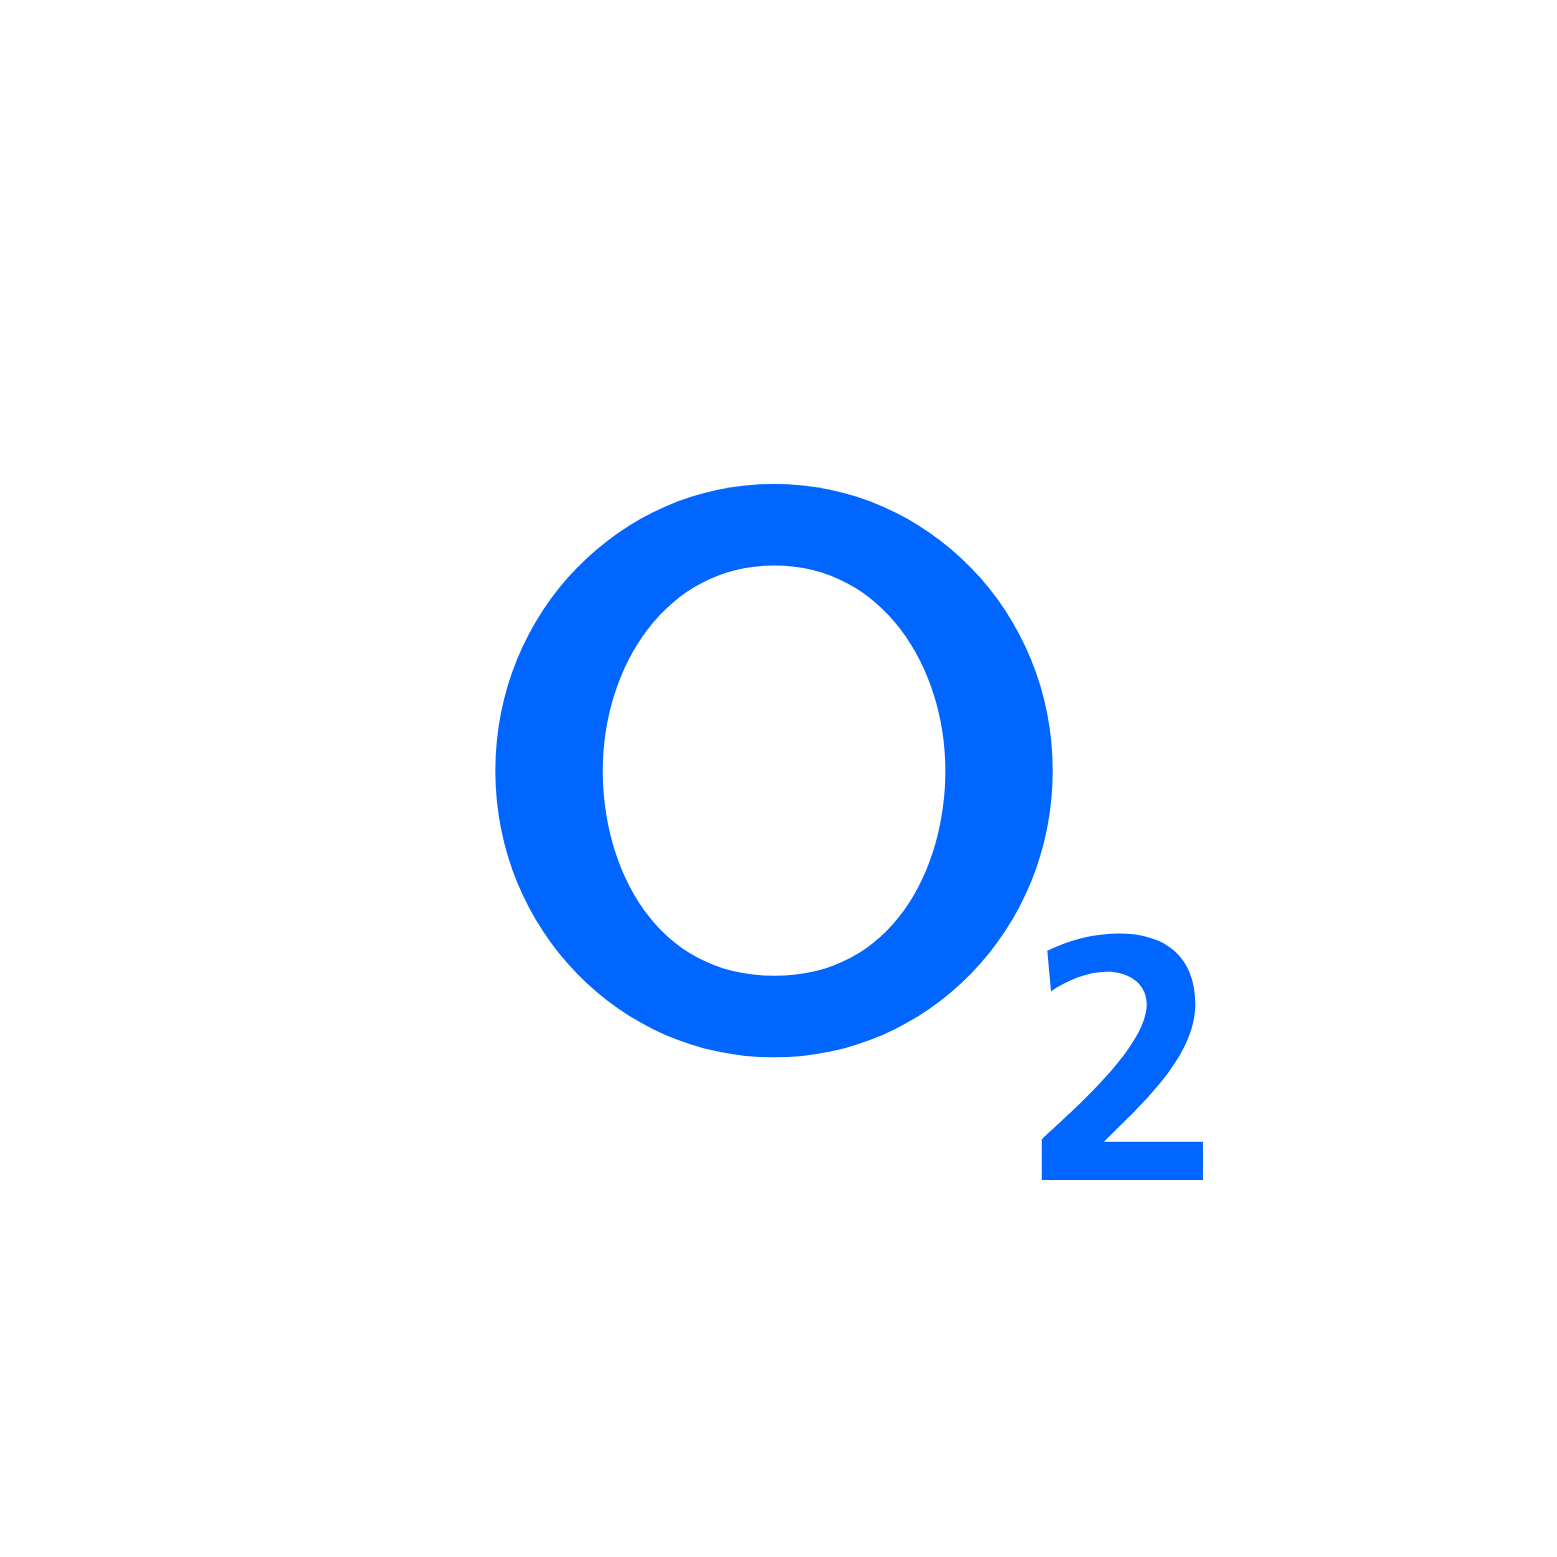 Oxygen o2 molecule icon 02 logo concept Royalty Free Vector